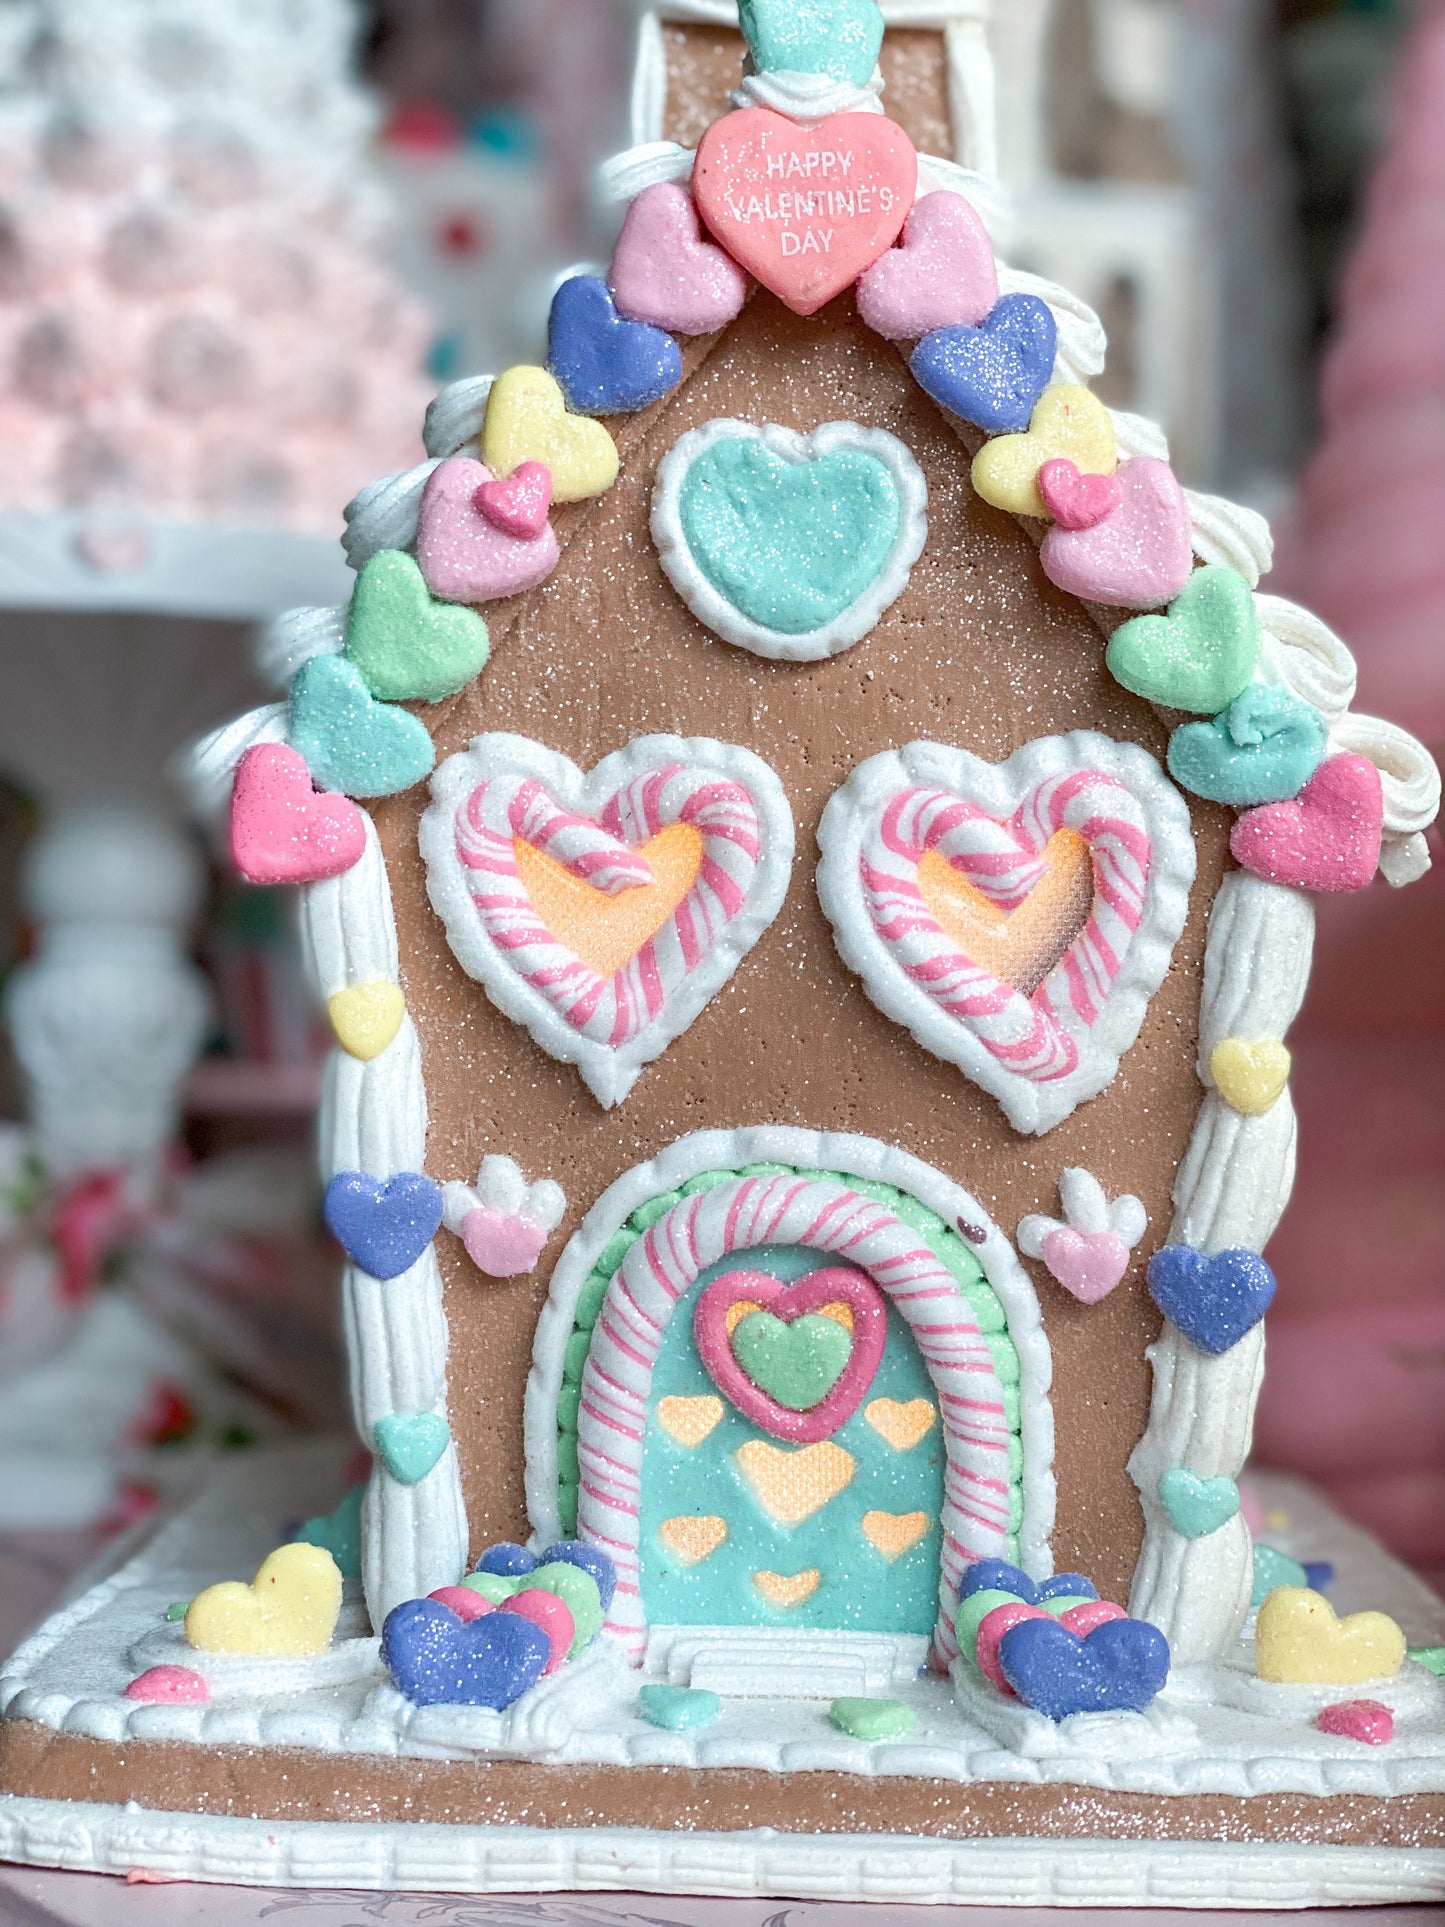 Casa de pan de jengibre iluminada en colores pastel del día de San Valentín